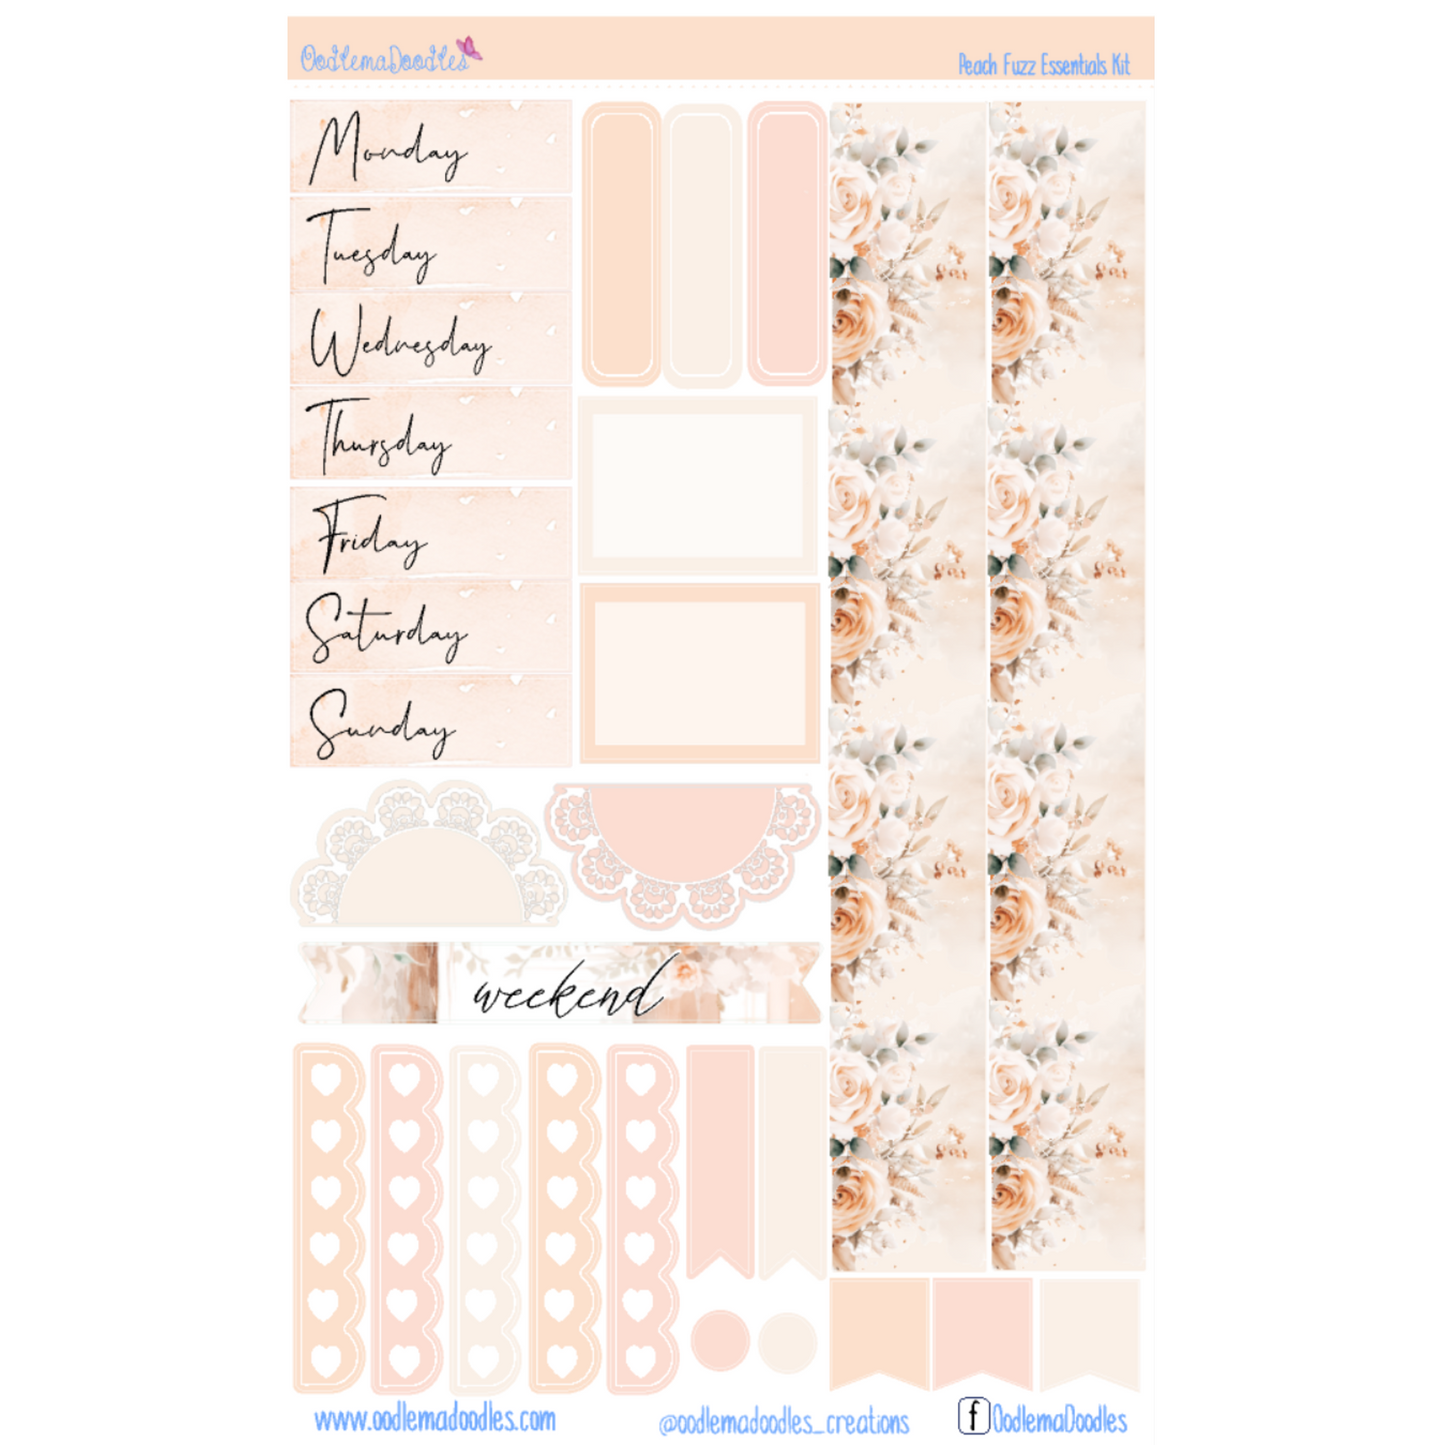 Peach Fuzz Essential Planner Sticker Kit